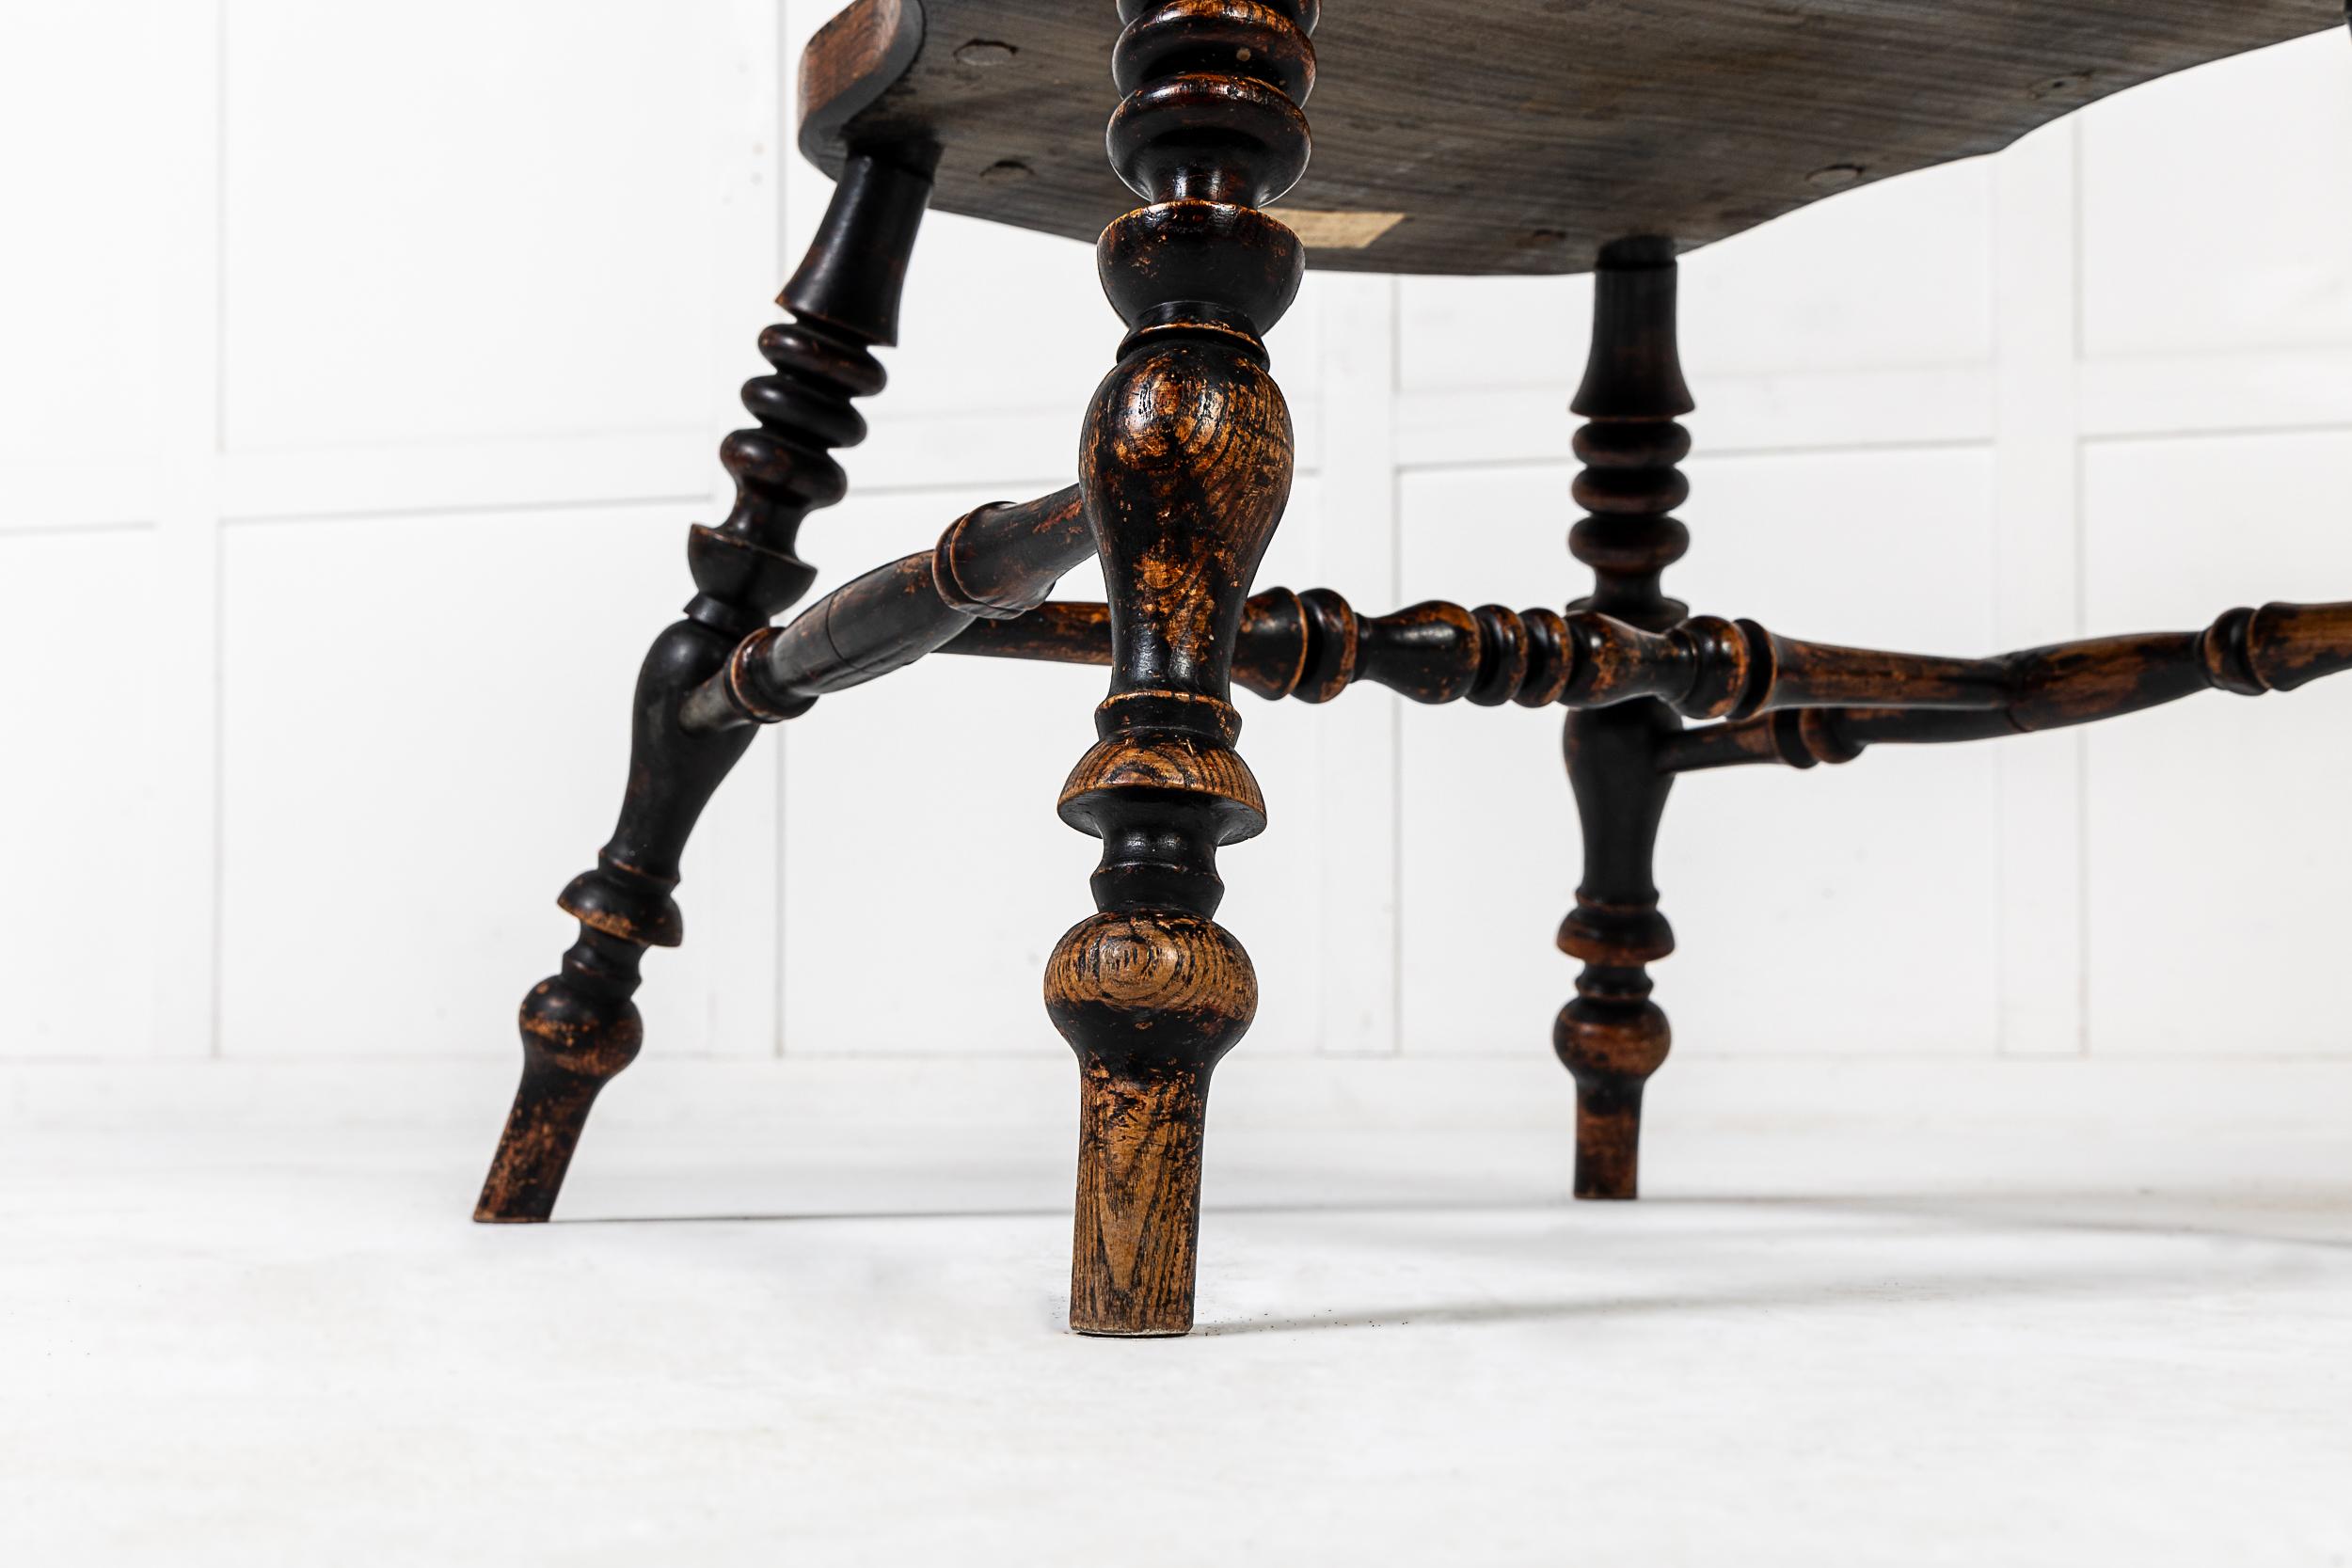 Ein charmanter Windsor-Stuhl des 19. Jahrhunderts mit Spindeldrehung und gewölbtem Sitz.

Dieser schöne Stuhl ist hauptsächlich aus Eschenholz mit Eibenholz-Rückenlehnen gefertigt. Es hat hohe und breite Proportionen, die ihm eine echte Präsenz im